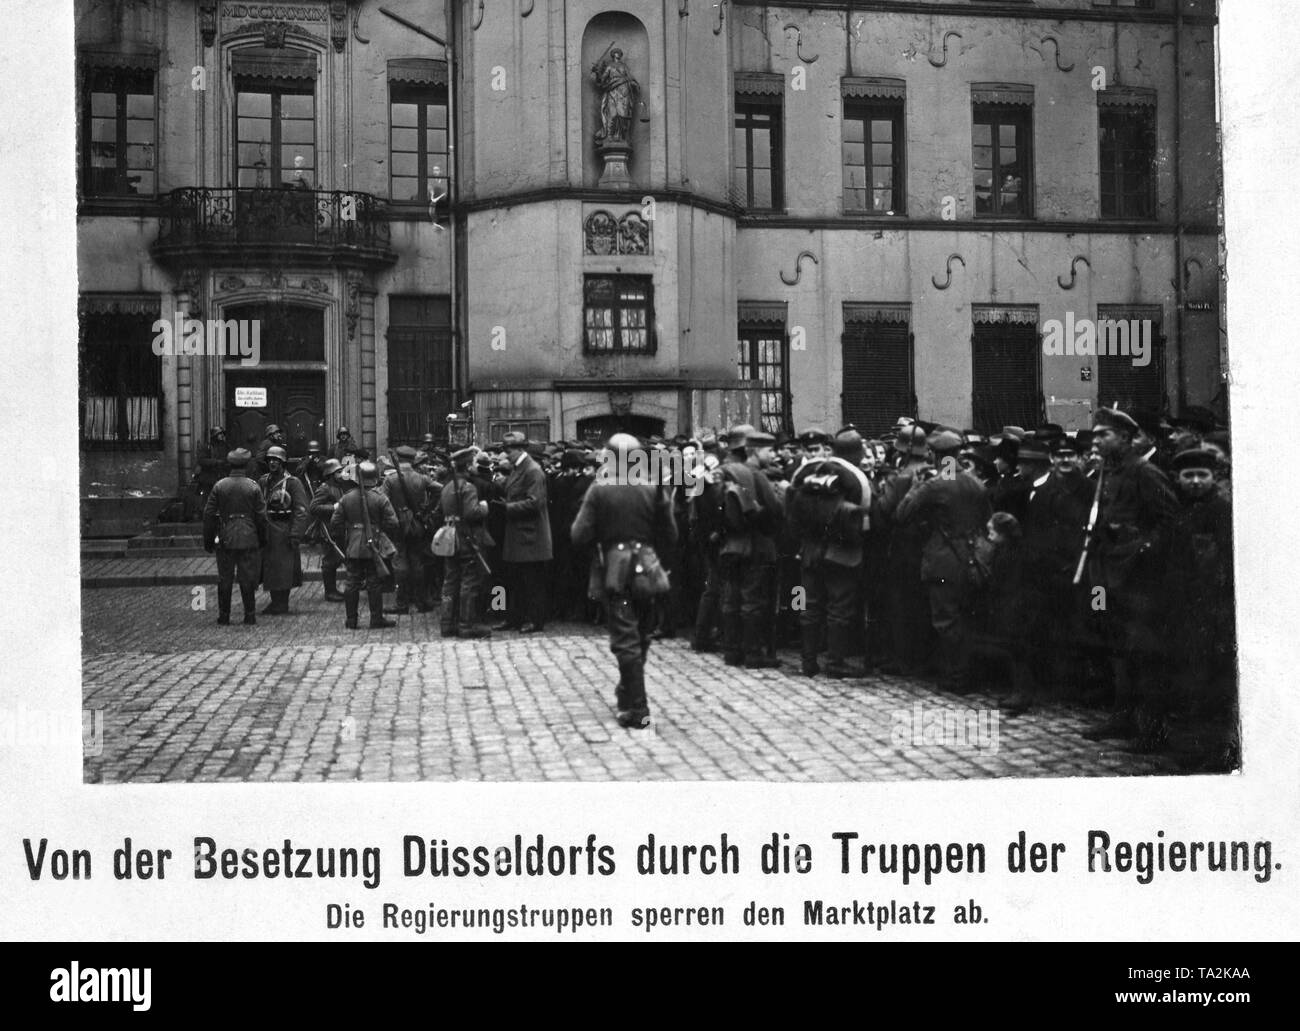 Le truppe del governo occupano Duesseldorf e delimitare l'market place. Due giorni dopo l'inizio dell'Kapp-Putsch, una rivolta comunista scoppiata nella regione della Ruhr. Armati lavoratori assumere il potere nella regione della Ruhr. Freikorps, intervenuta sul governo dell ordine, viene respinto e soffre di pesanti perdite. Essa è stata per la prima volta il 2 aprile, quando la Reichswehr intervenne, quando l'esercito rosso dovuto ritirare. Dopo sanguinose battaglie la Reichswehr è riuscito a ripristinare il vecchio ordine entro il decimo giorno del mese di maggio. Foto Stock